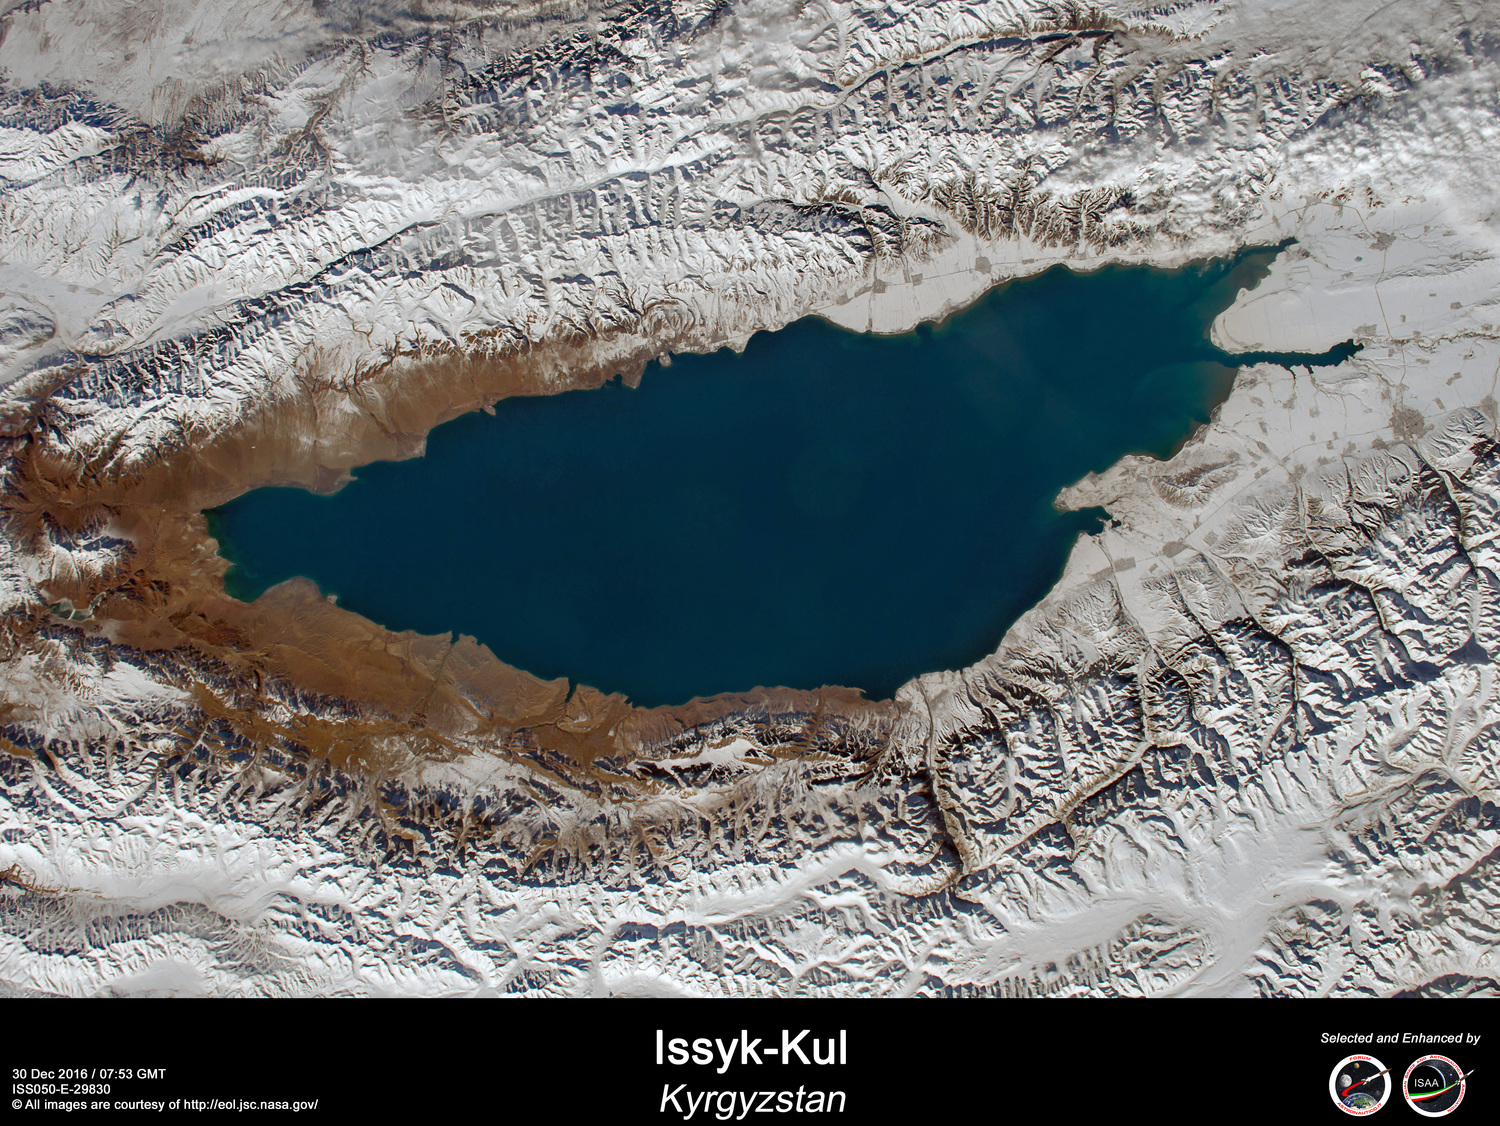 Issyk-Kul lake